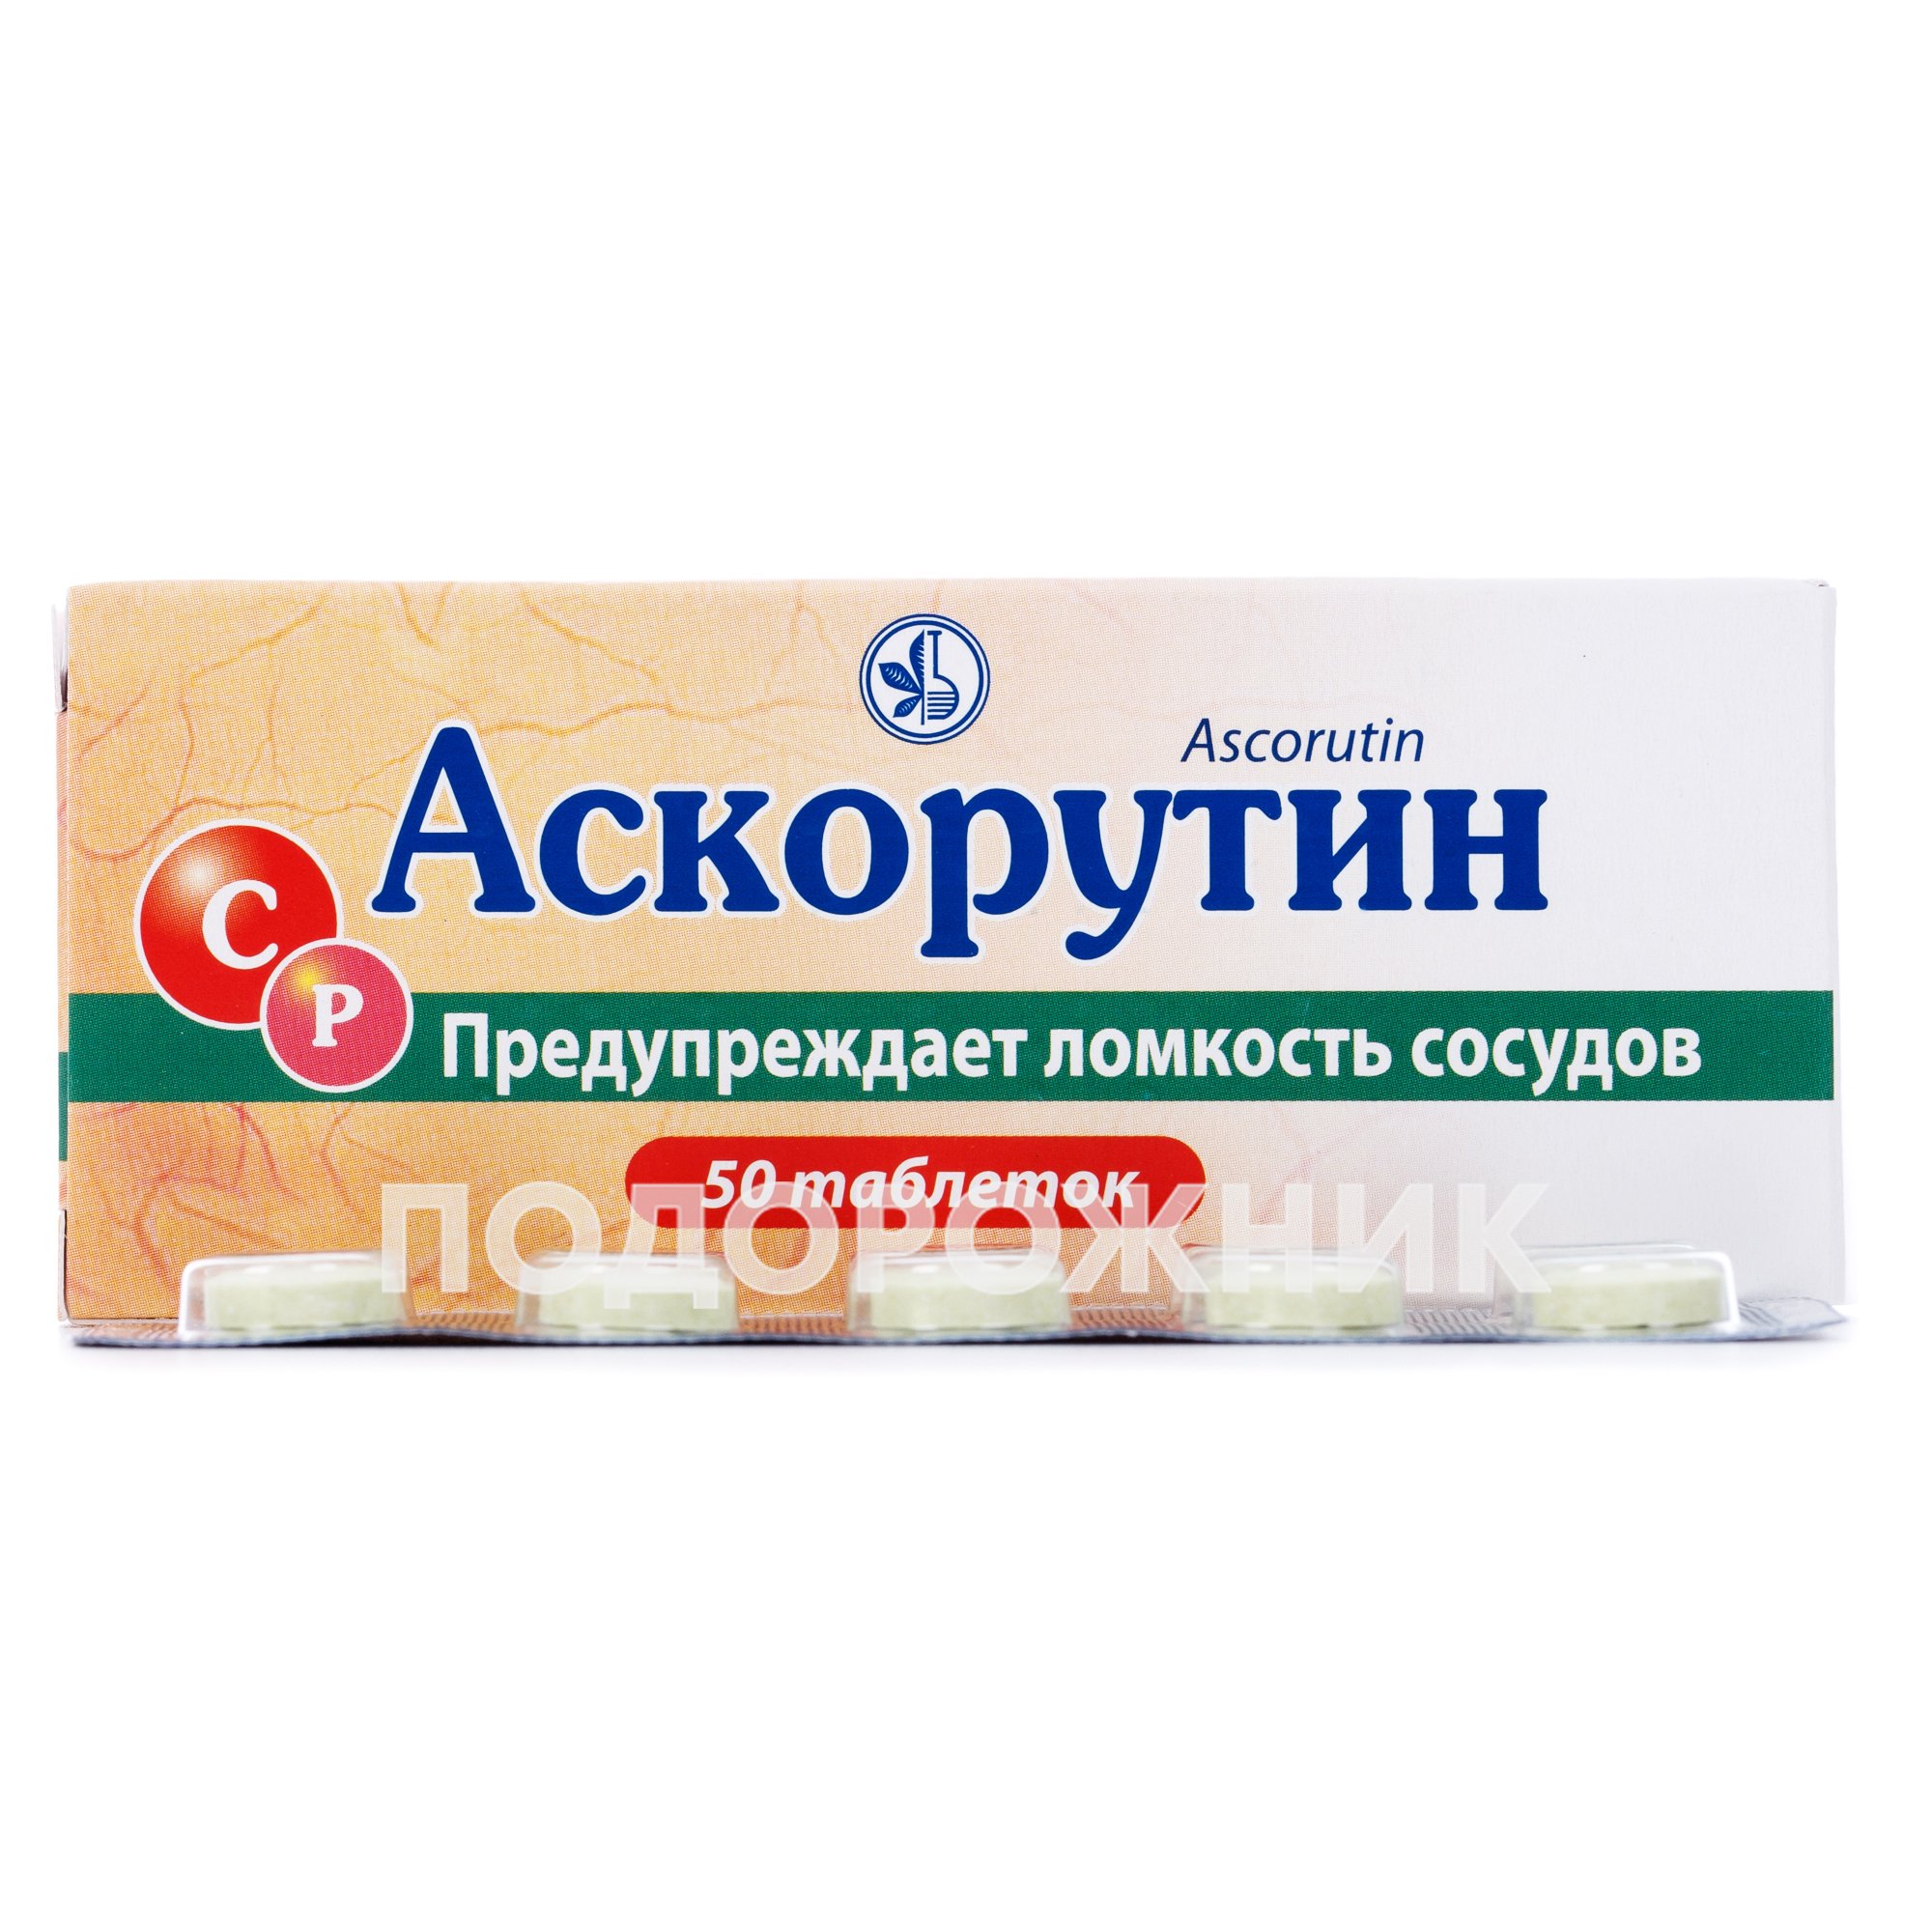 Аскорутин таблетки 50 шт. - ский витаминный завод: инструкция, цена .